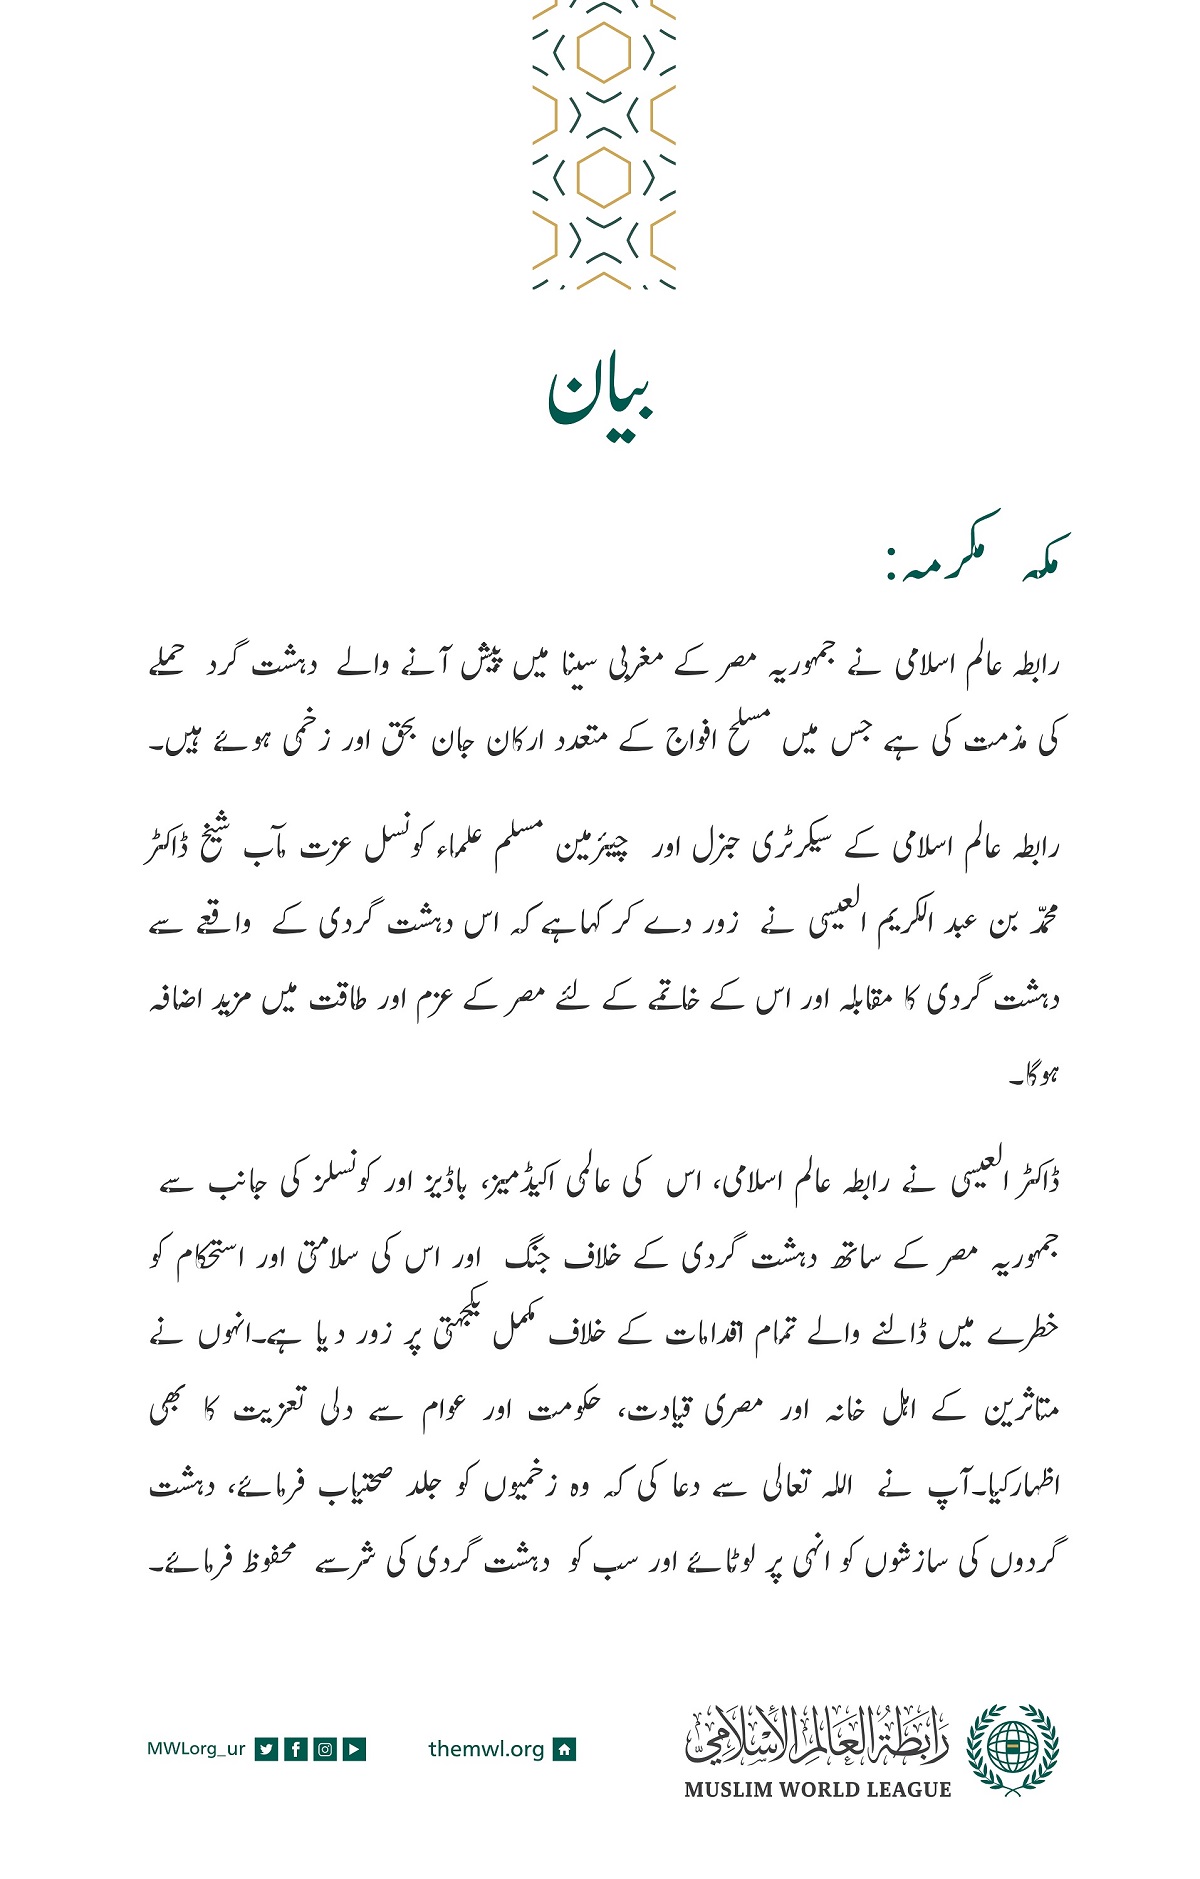 رابطہ عالم اسلامی کی جانب سے جاری کردہ بیان: